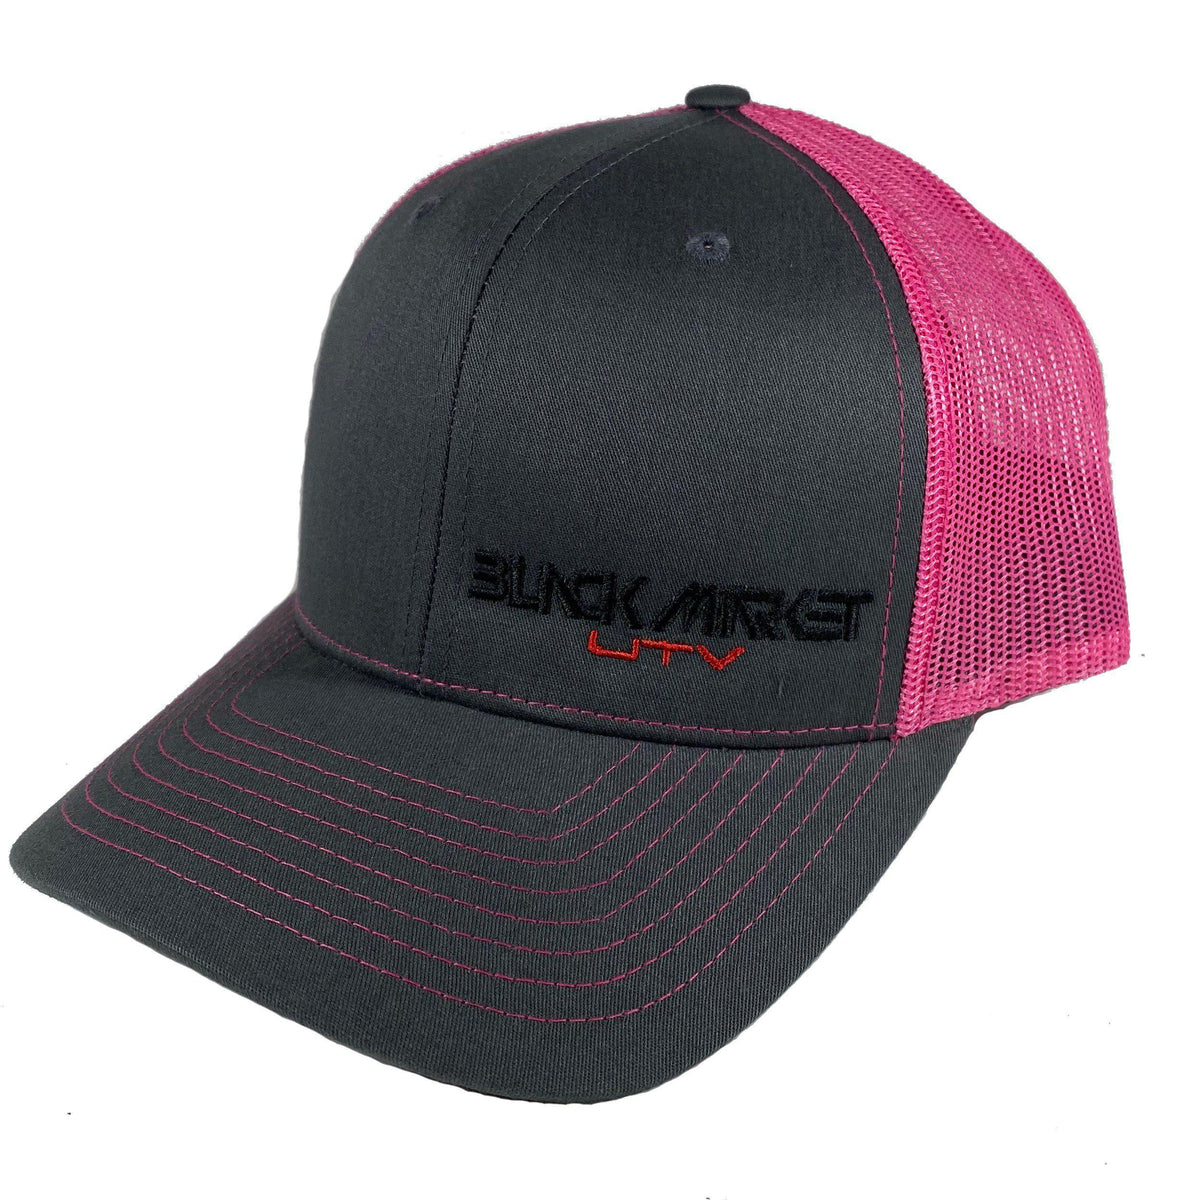 Black Market UTV - Trucker Hats-Hats-Black Market UTV-Gray/Pink-Black Market UTV